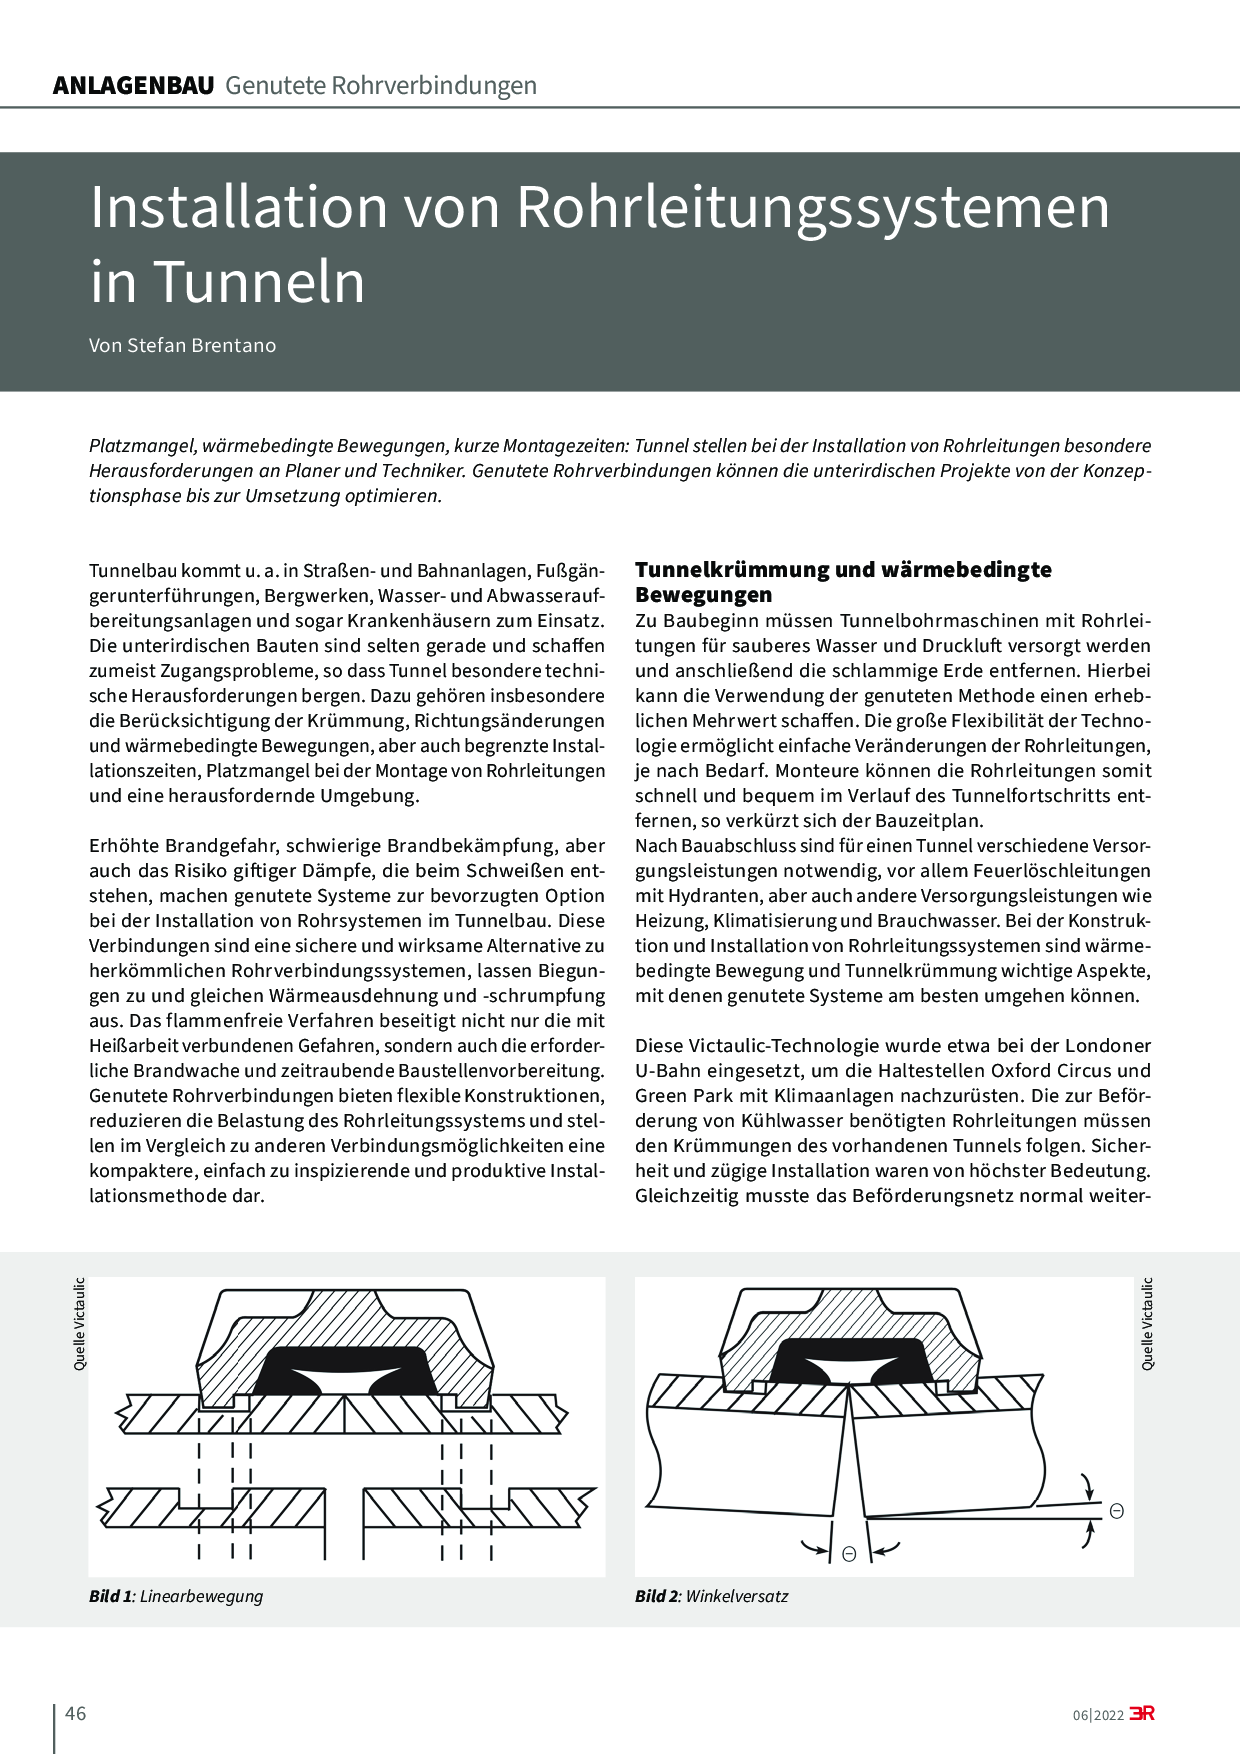 Installation von Rohrleitungssystemen in Tunneln